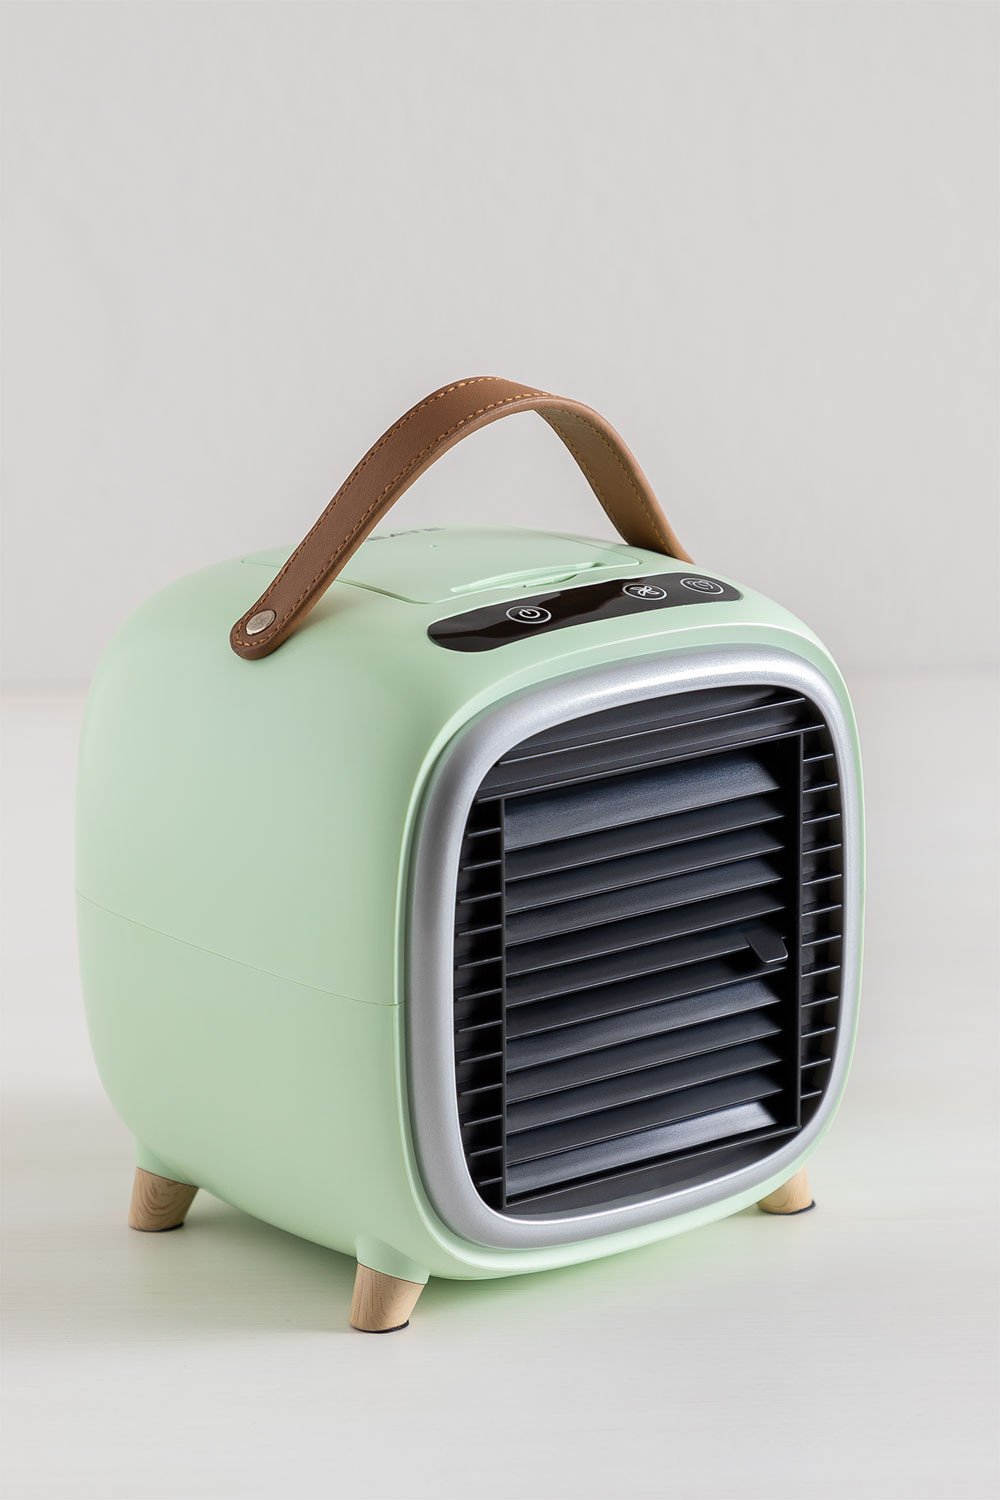 CREATE - AIR COOLER BOX - Mini tafelmodel airconditioner, galerij beeld 1